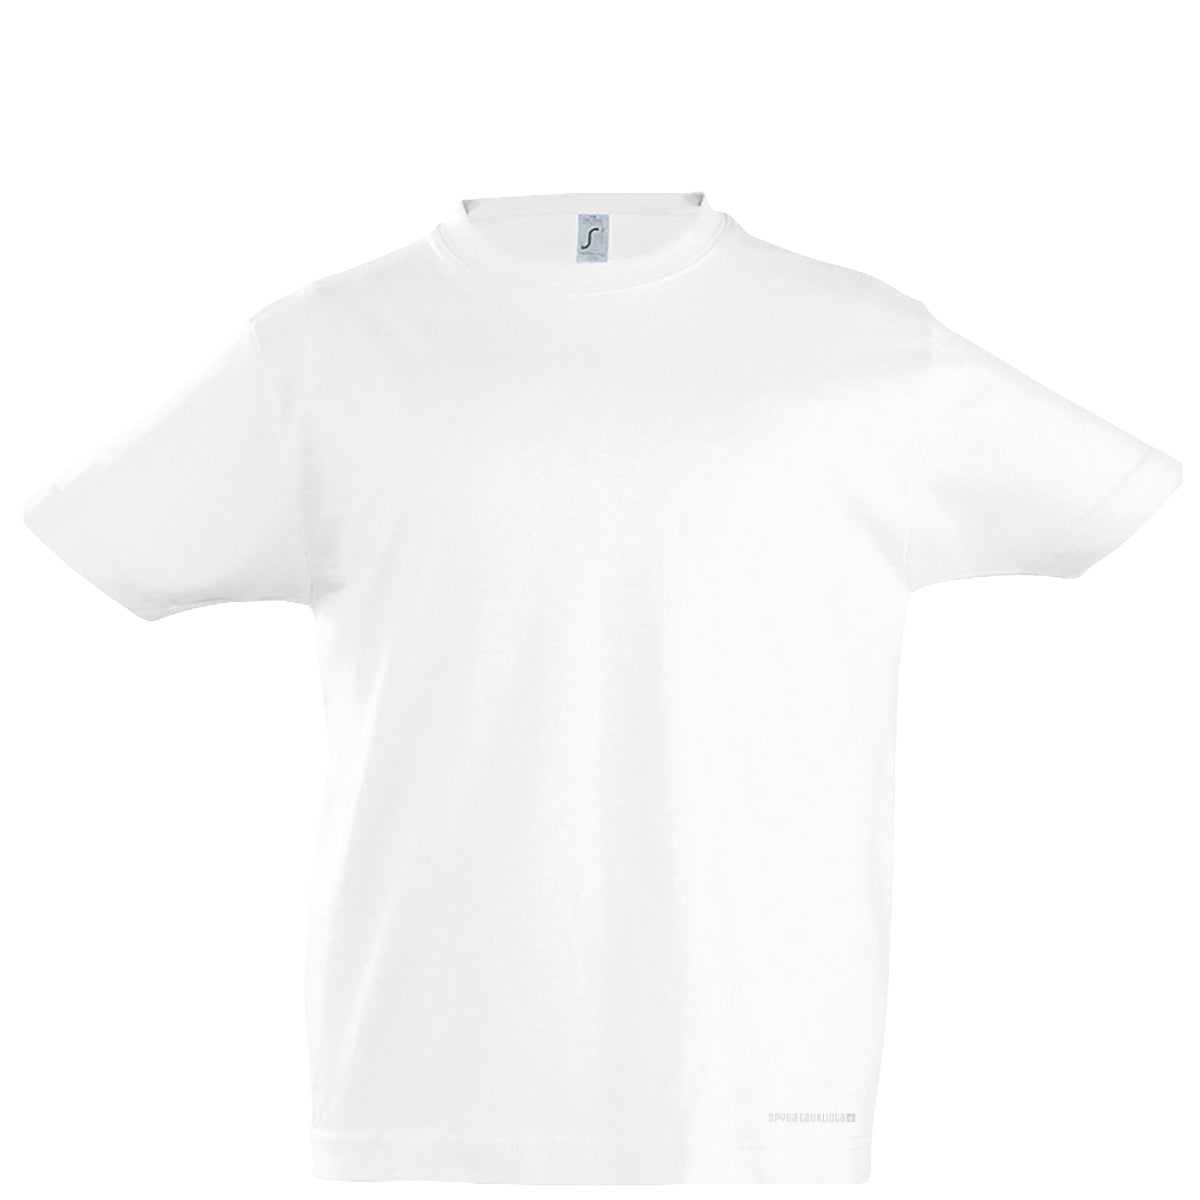 Balti vaikiški marškinėliai be spaudos